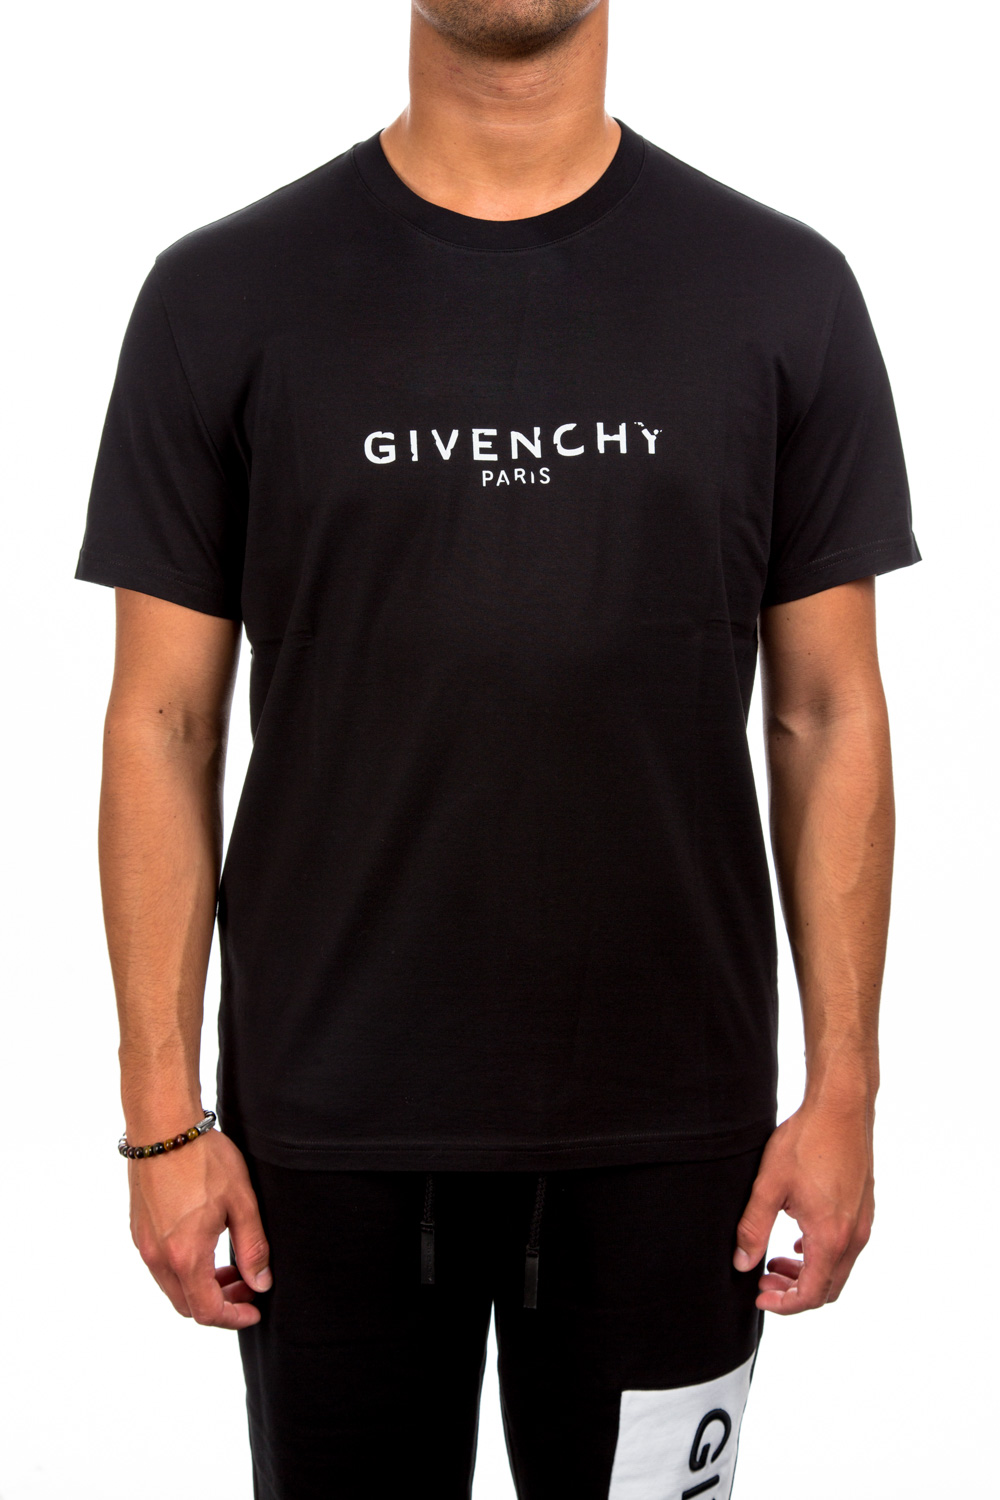 Givenchy T-shirt | Credomen